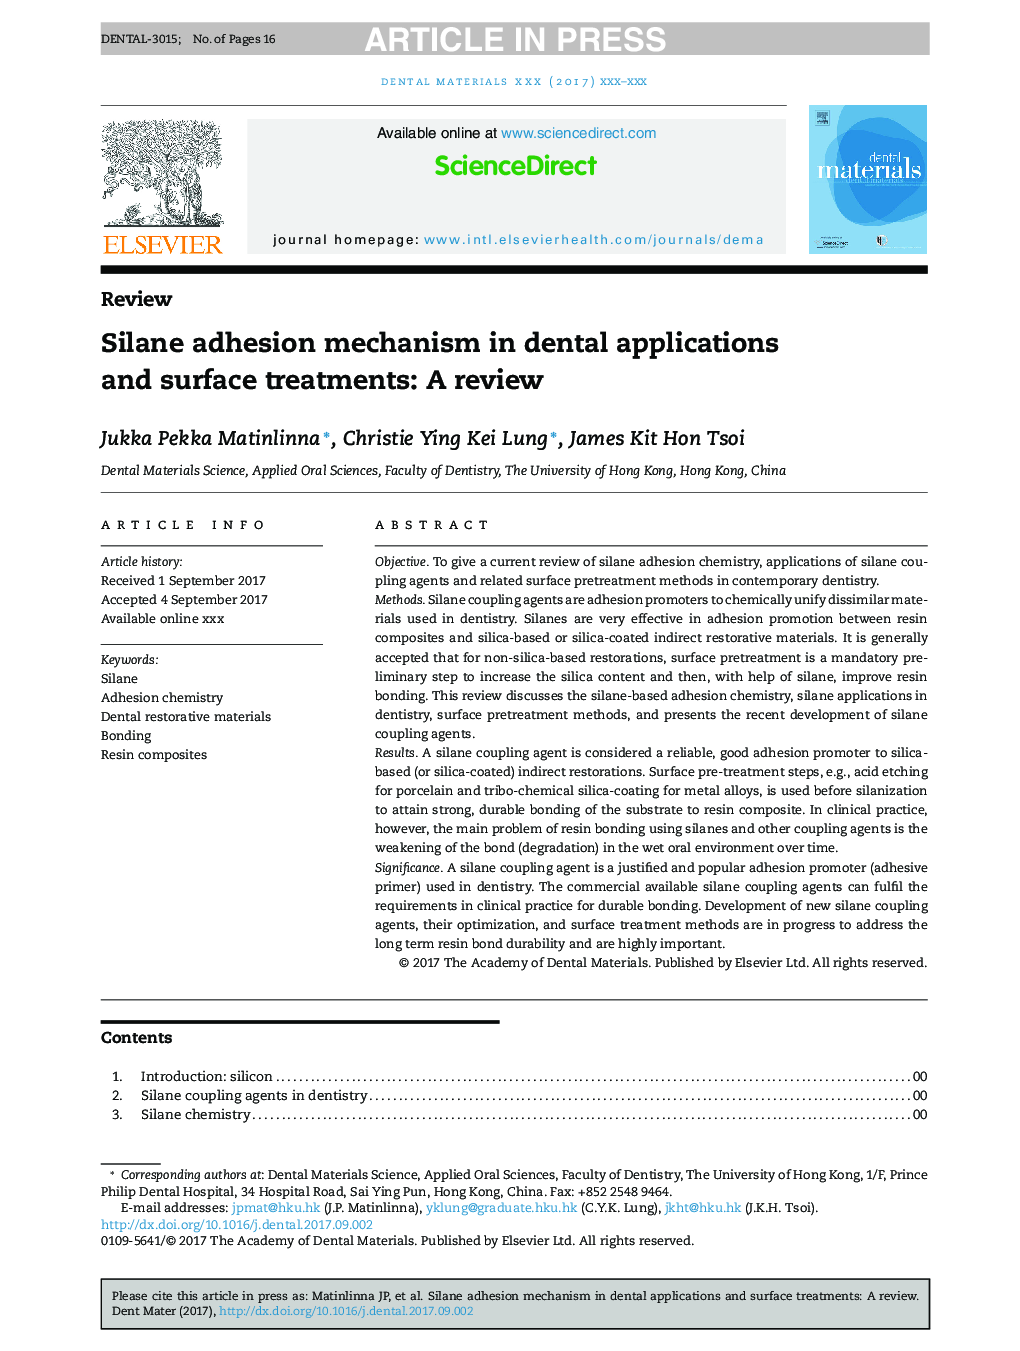 مکانیزم چسبندگی سیلان در برنامه های دندانپزشکی و درمان های سطحی: یک بررسی 